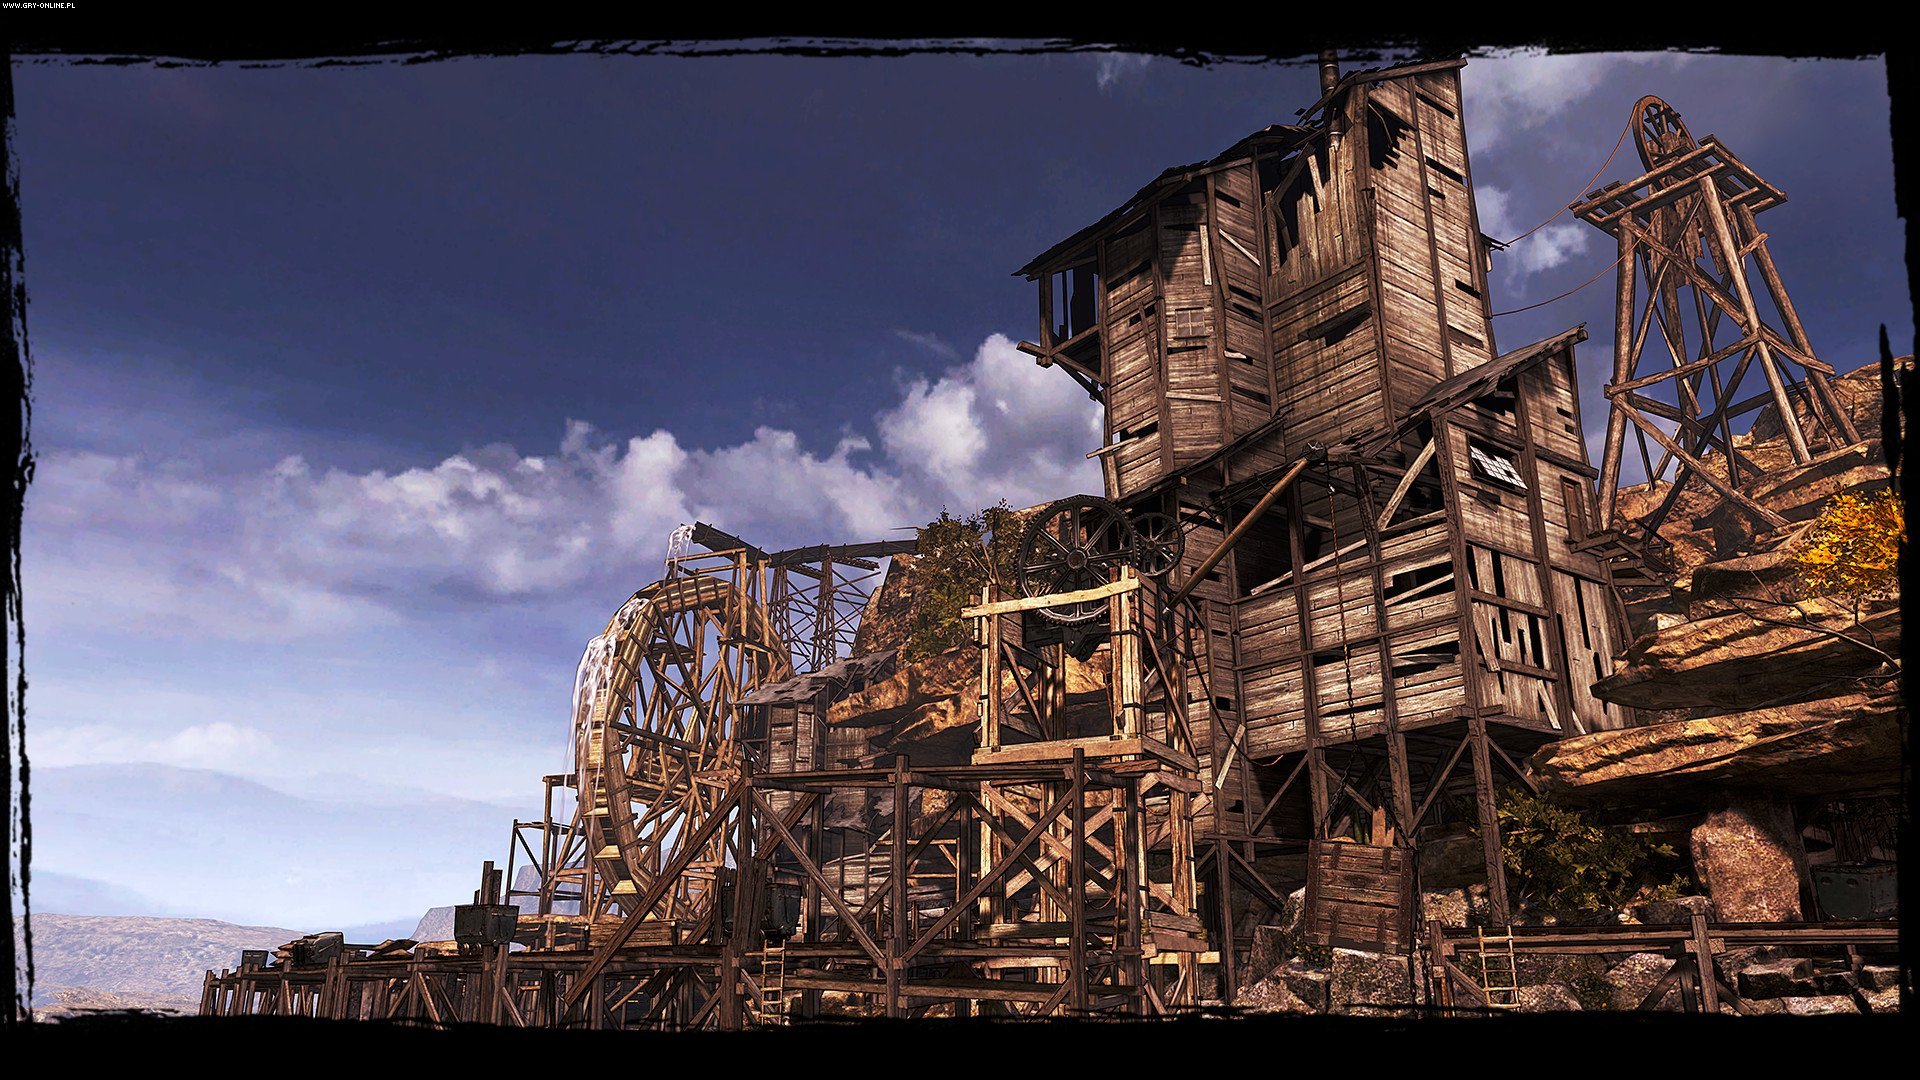 Call of Juarez: Gunslinger (gra) - screen 3/8, Galeria HD, zdjęcie z gry w wersji PC, X360, PS3, strzelanki, Ubisoft, FPP, western, FPS, multiplayer, polskie - data publikacji: 2012-09-06 12:47:28 - gry-online.pl